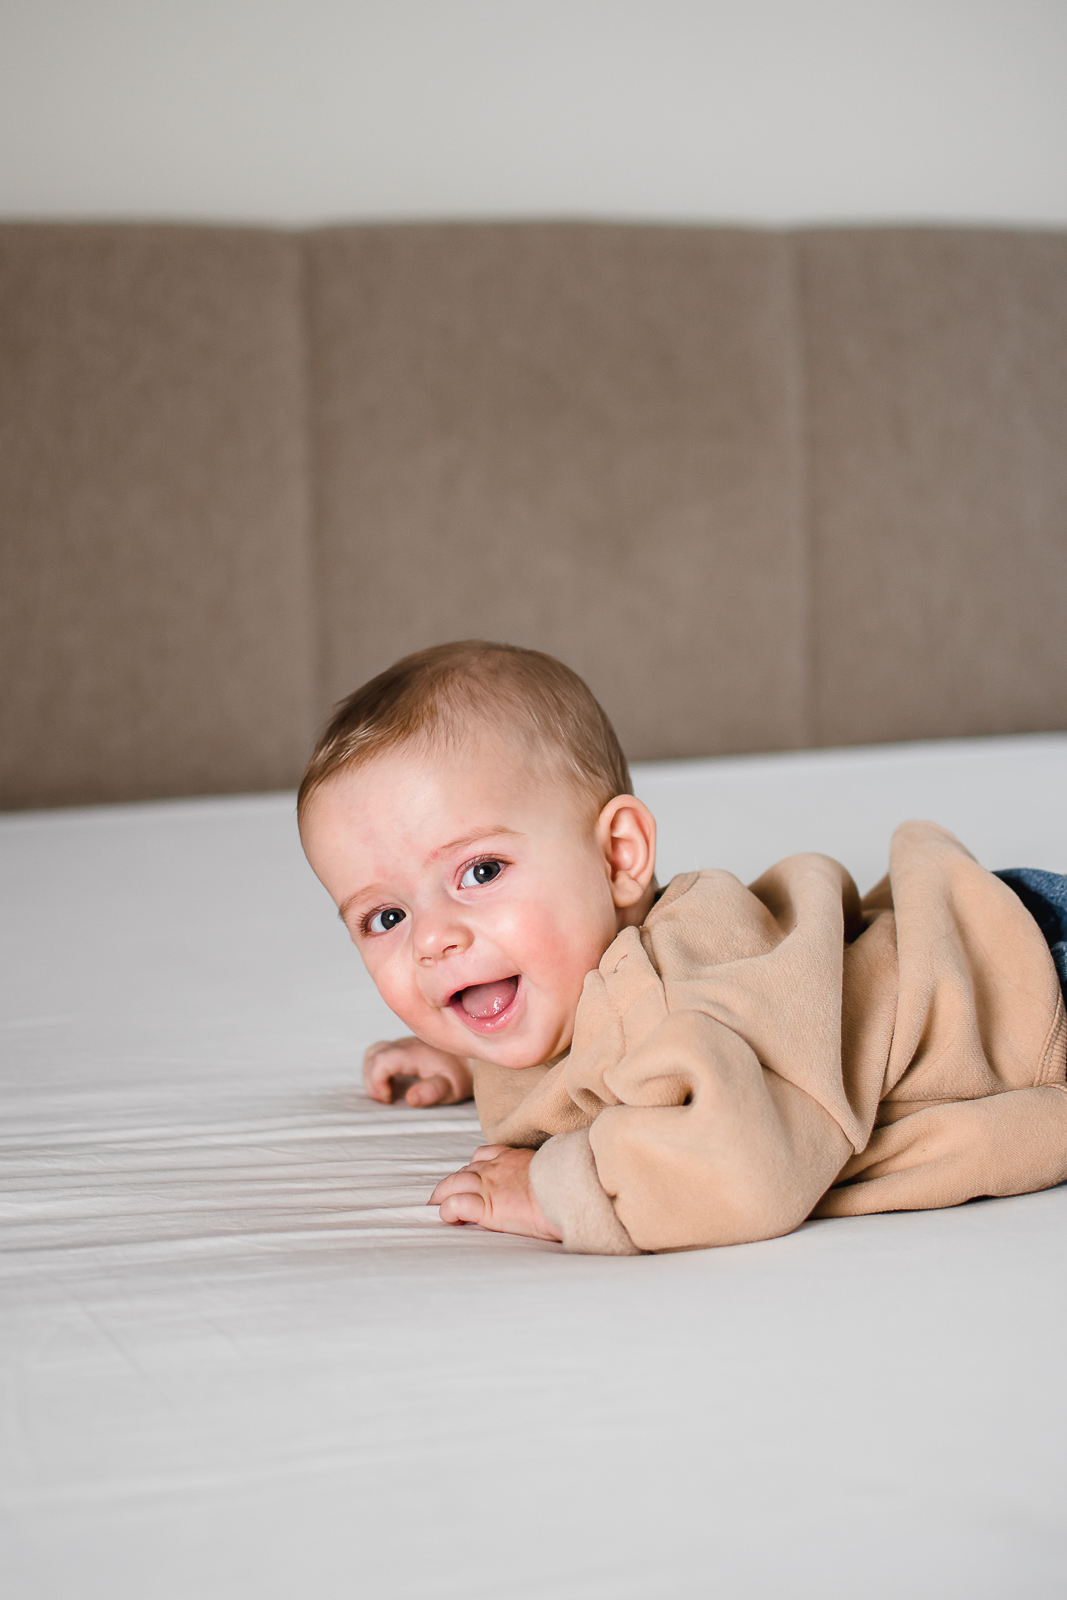 Frania fotografie Turnhout Kempen Antwerpen Fotograaf milestone sitter 6 maanden baby kind kinderen